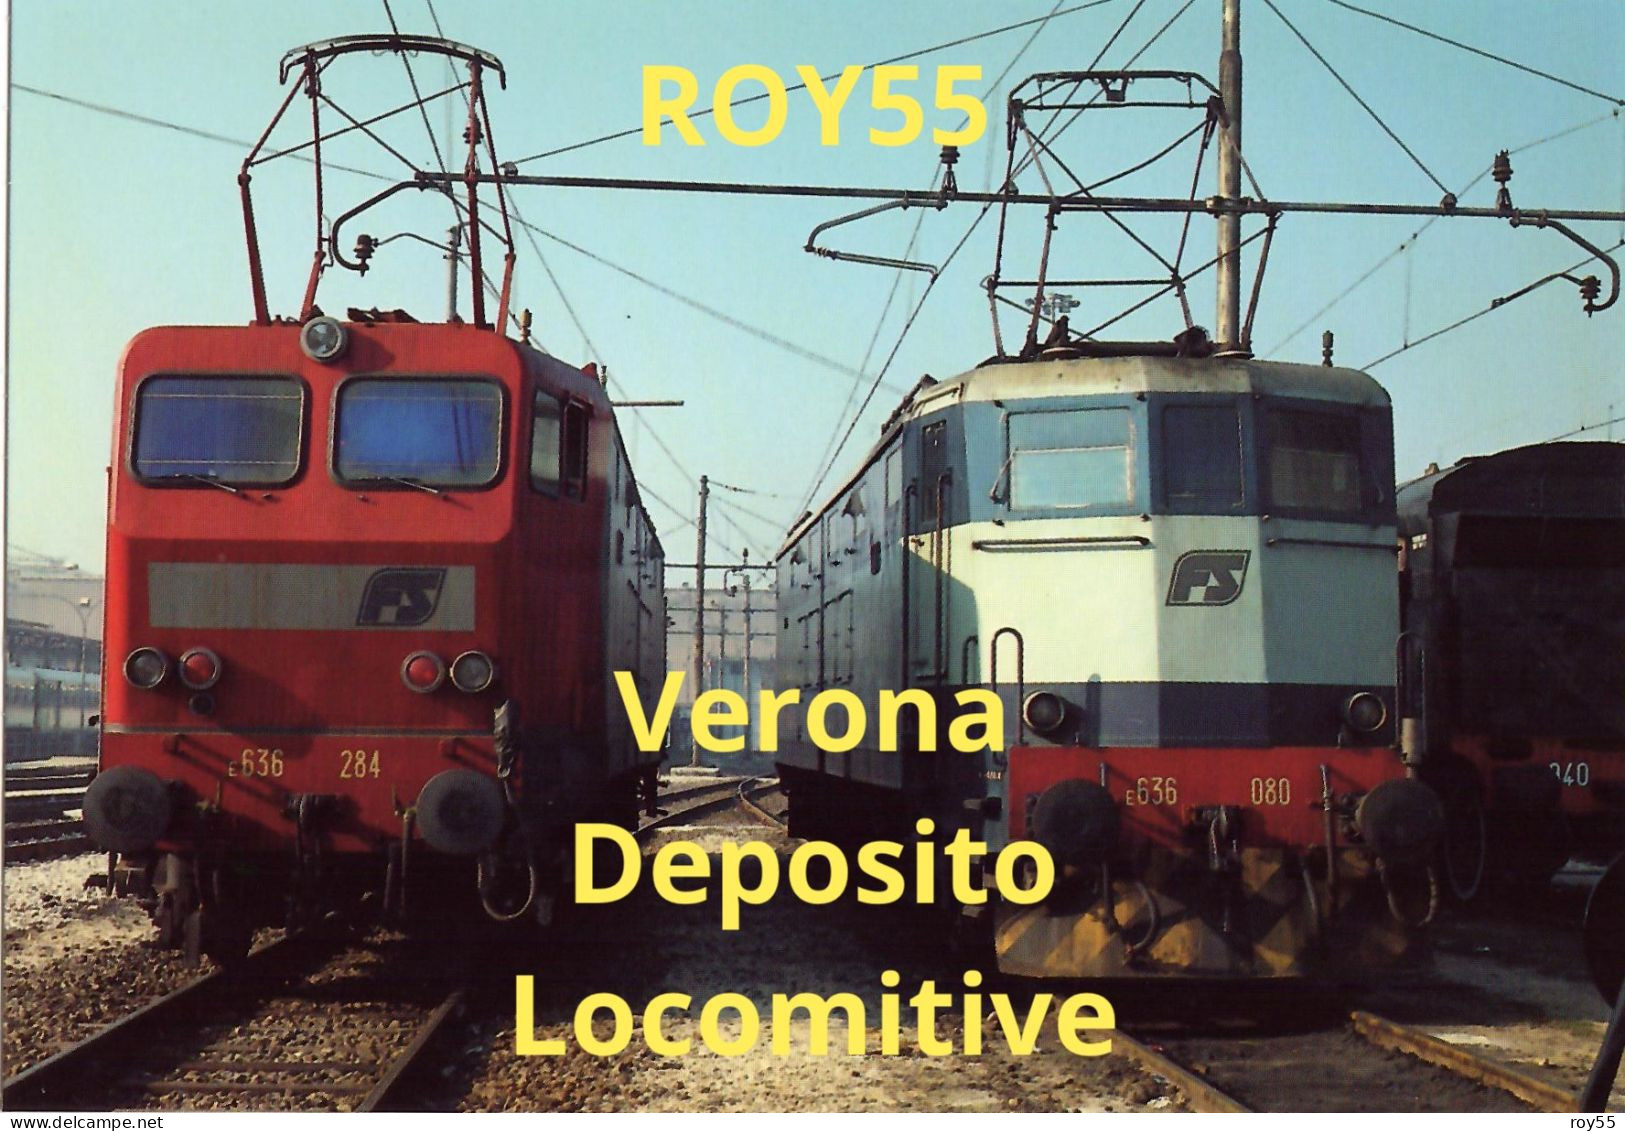 Veneto Verona Stazione Ferroviaria Del Deposito Locomotive Di Verona Treni Locomotori In Sosta Nel 1991 (v.retro) - Trains